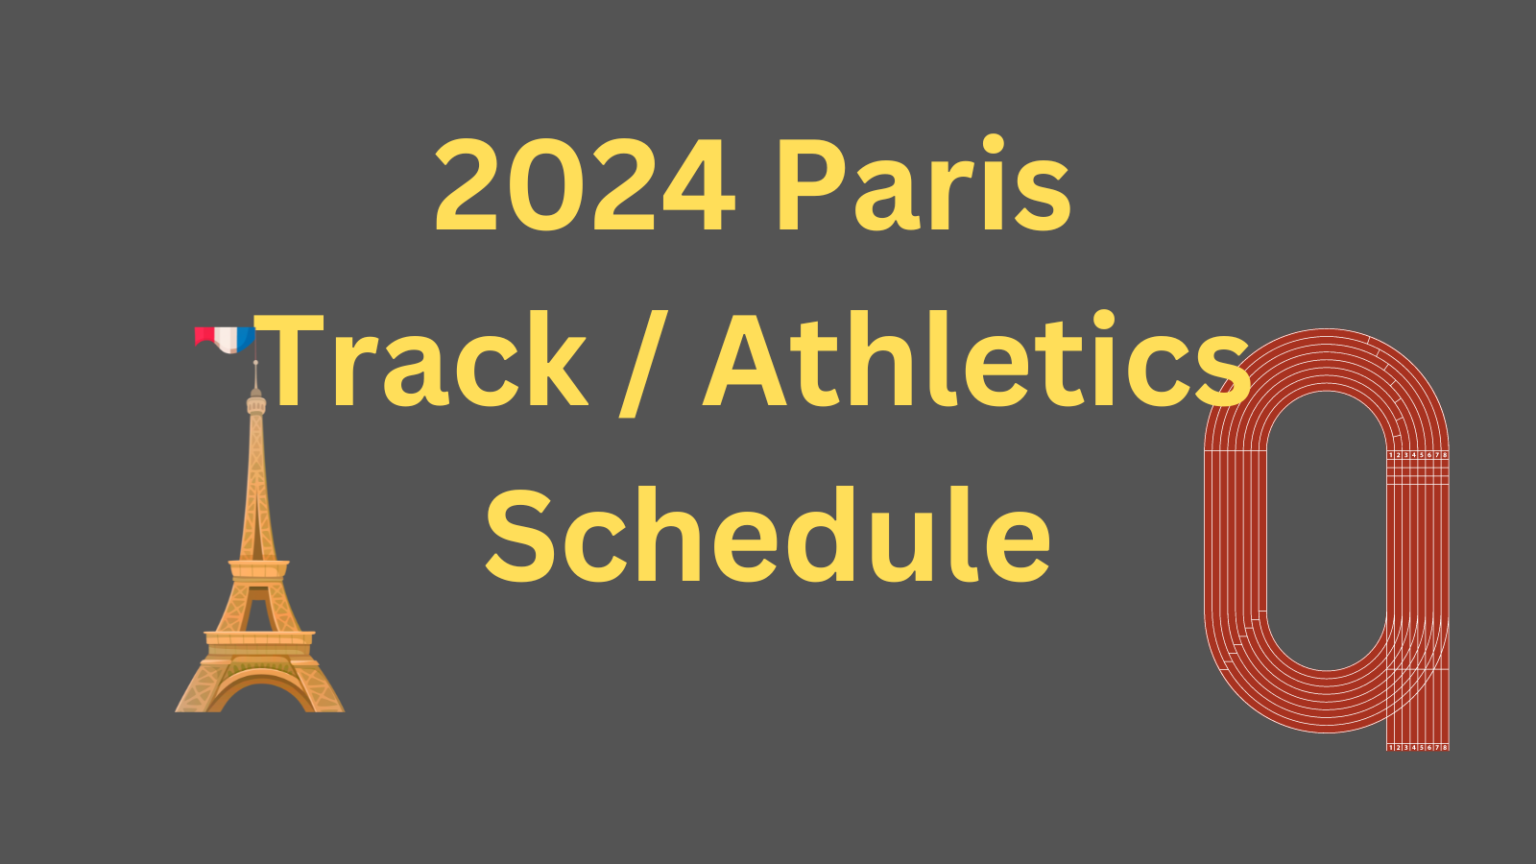 2024 Paris Track Athletics Olympic Schedule 1536x864 